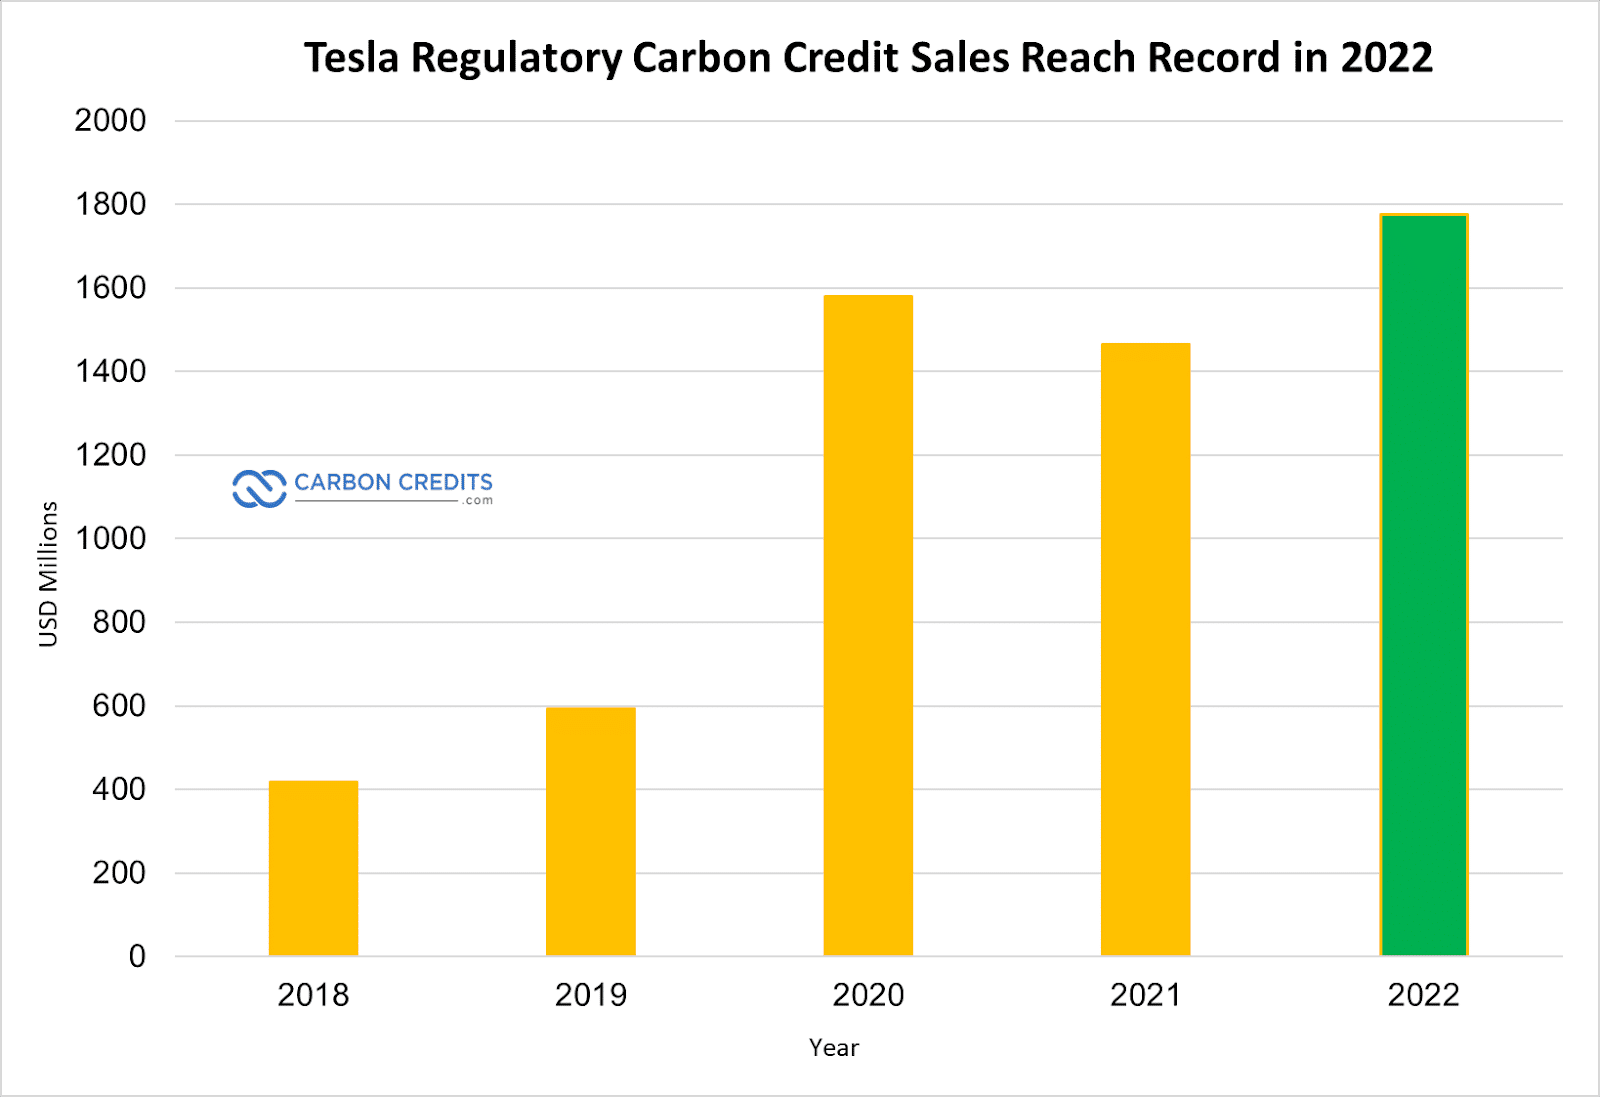 Vendas de crédito de carbono da Tesla atingem recorde de US$ 1.78 bilhão em 2022